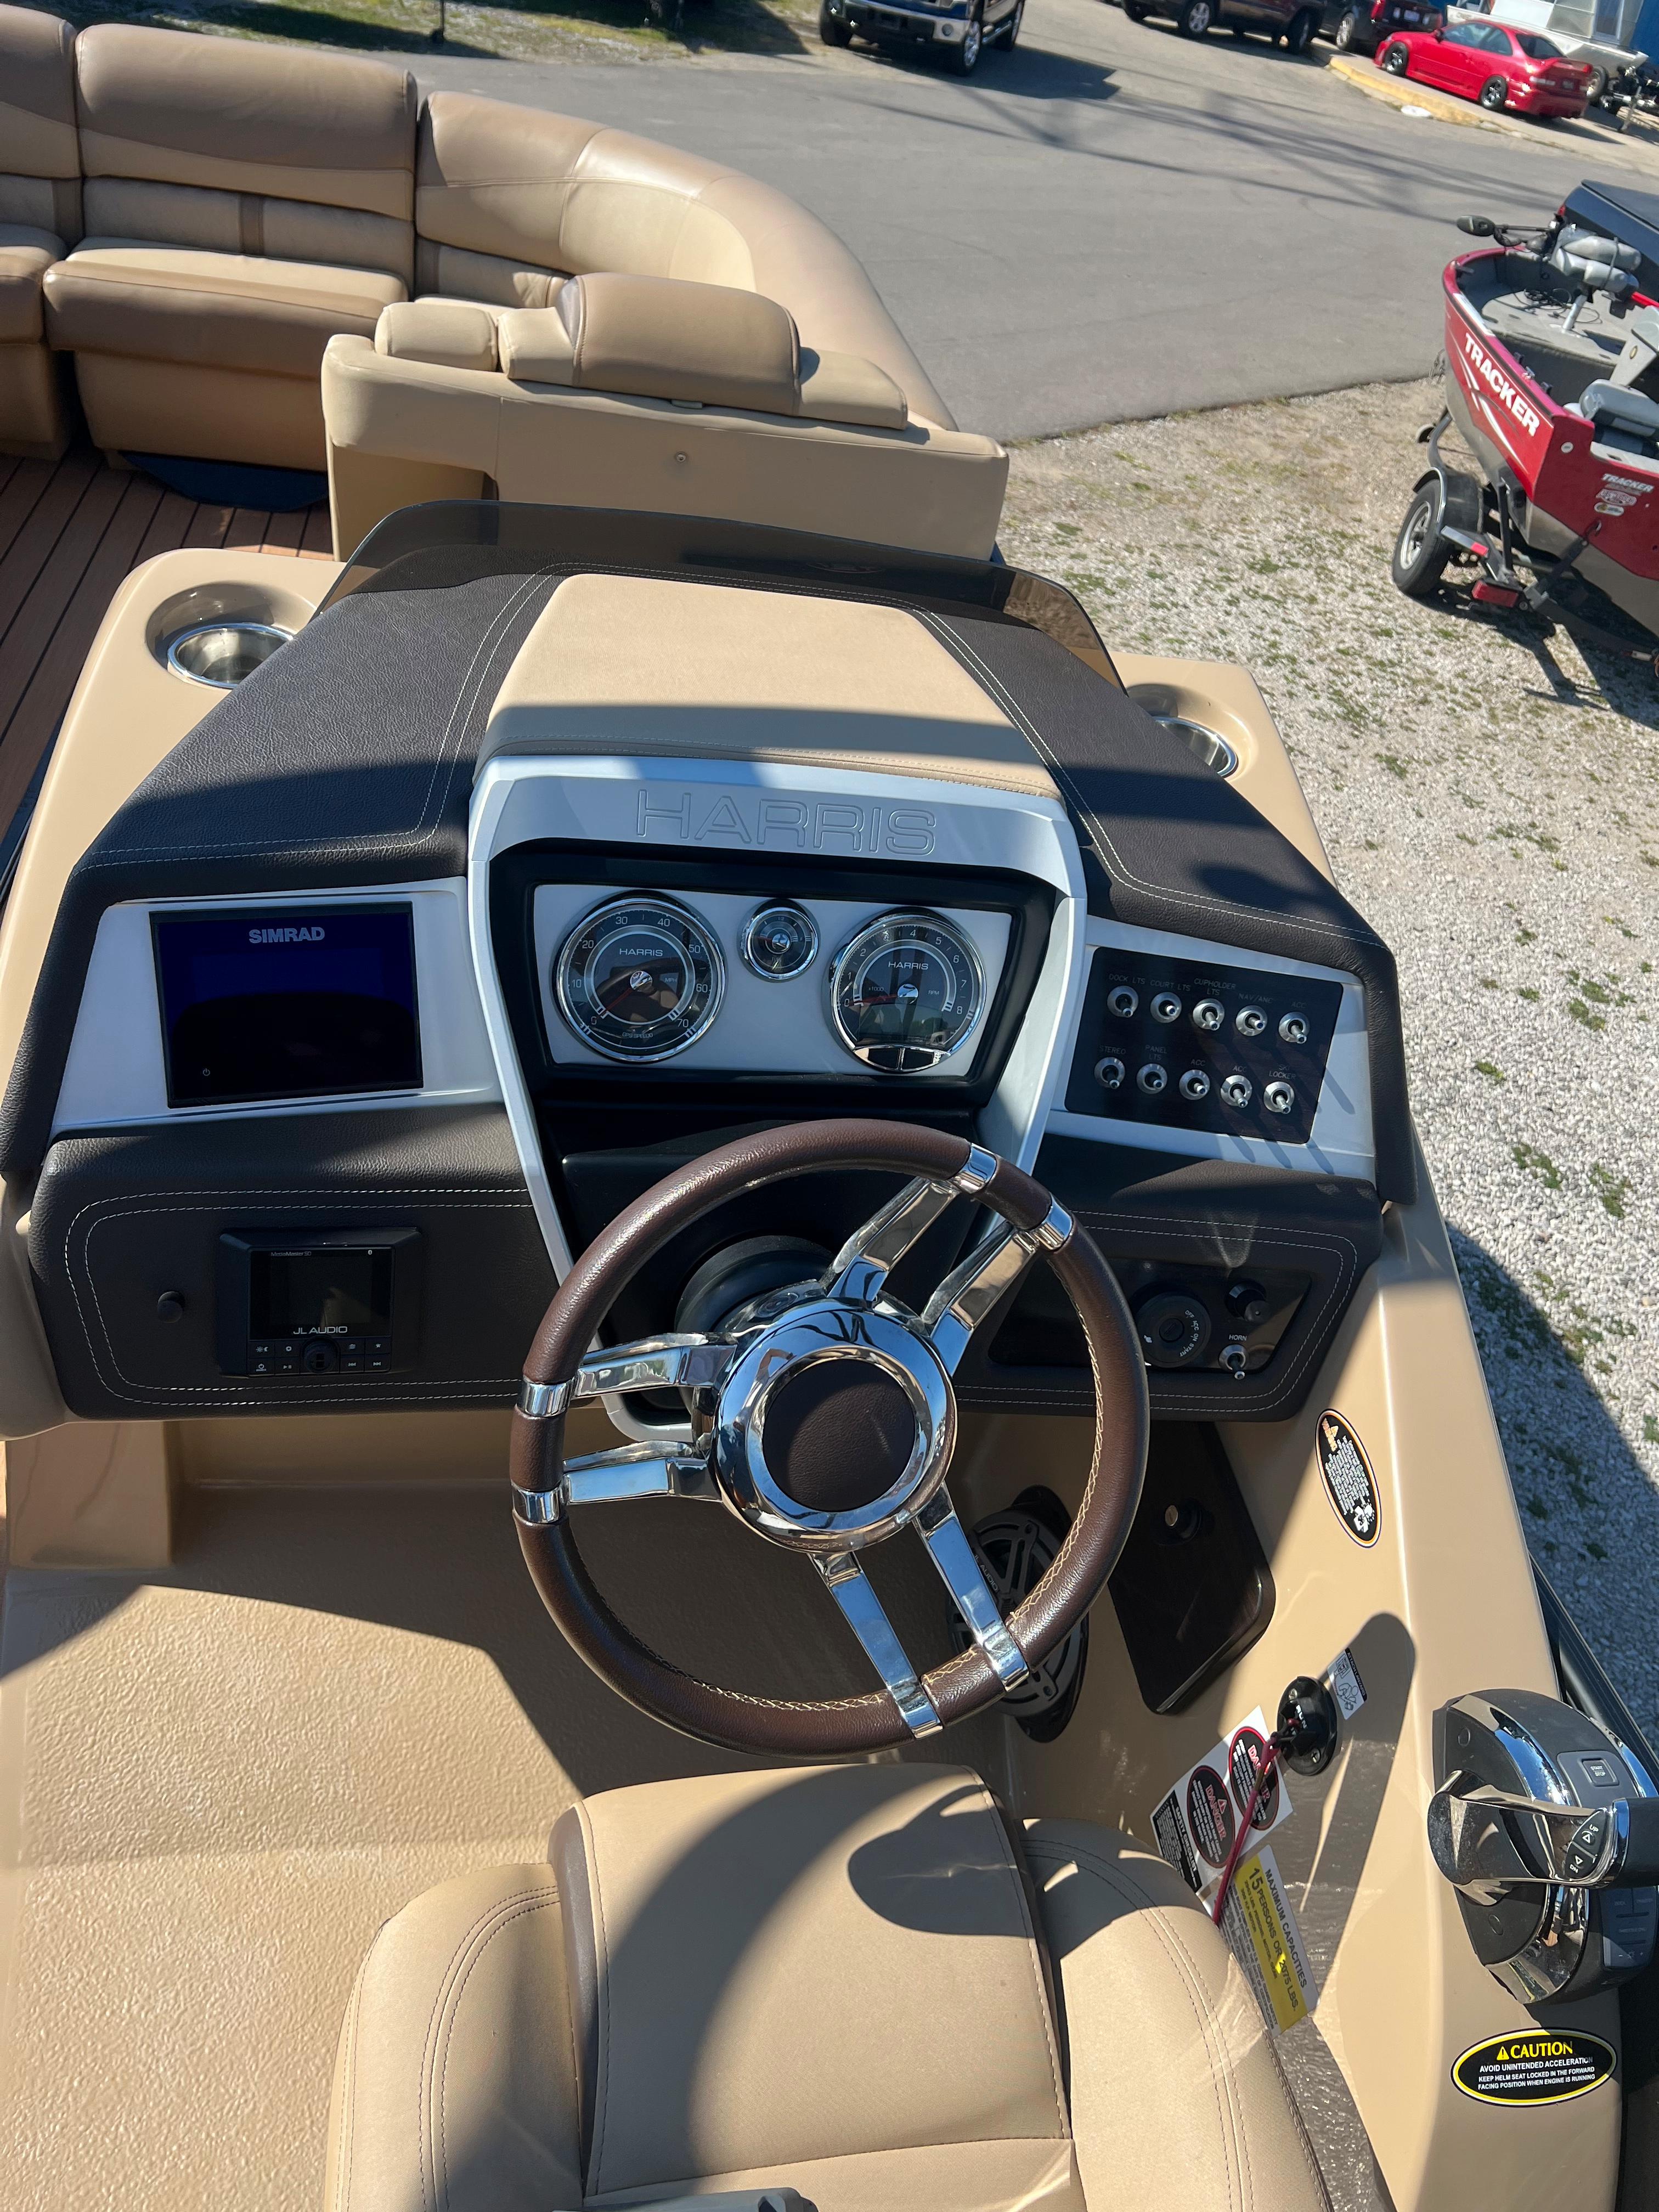 2019 Harris Crowne SL 250